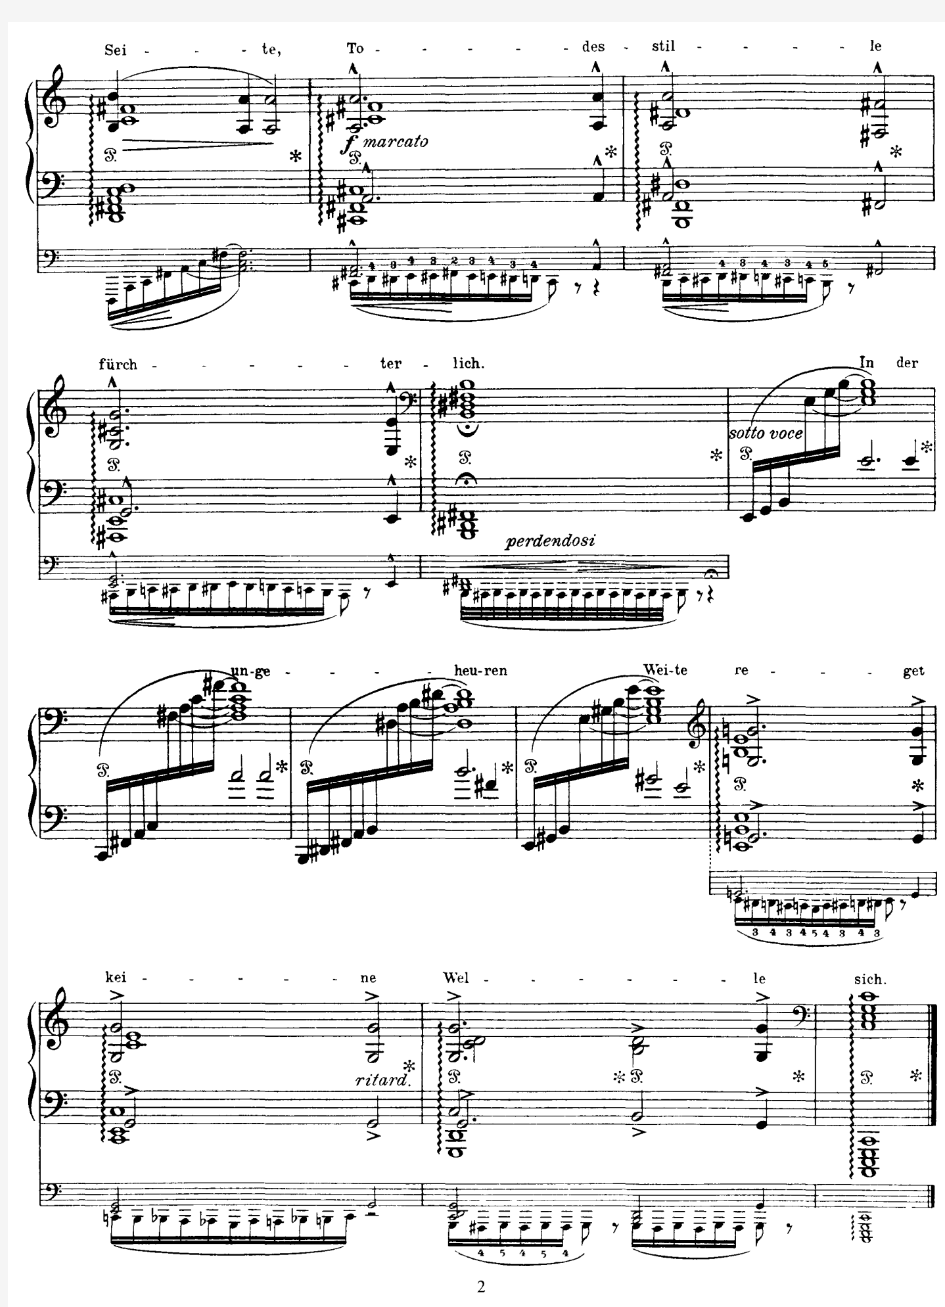 (李斯特 改编舒伯特版)Meeresstille (Schubert) 原版 五线谱 钢琴谱 正谱